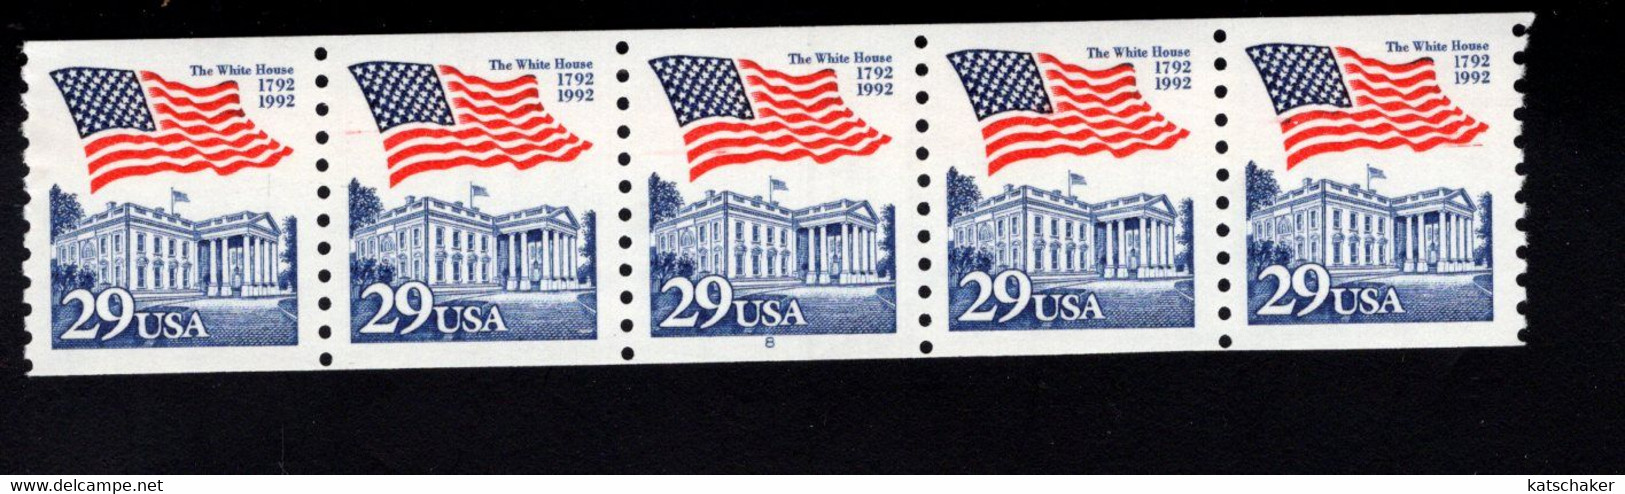 310987571 1992 (XX)  SCOTT 2609 PCN  POSTFRIS MINT NEVER HINGED  - FLAG OVER WHITE HOUSE - Rollenmarken (Plattennummern)